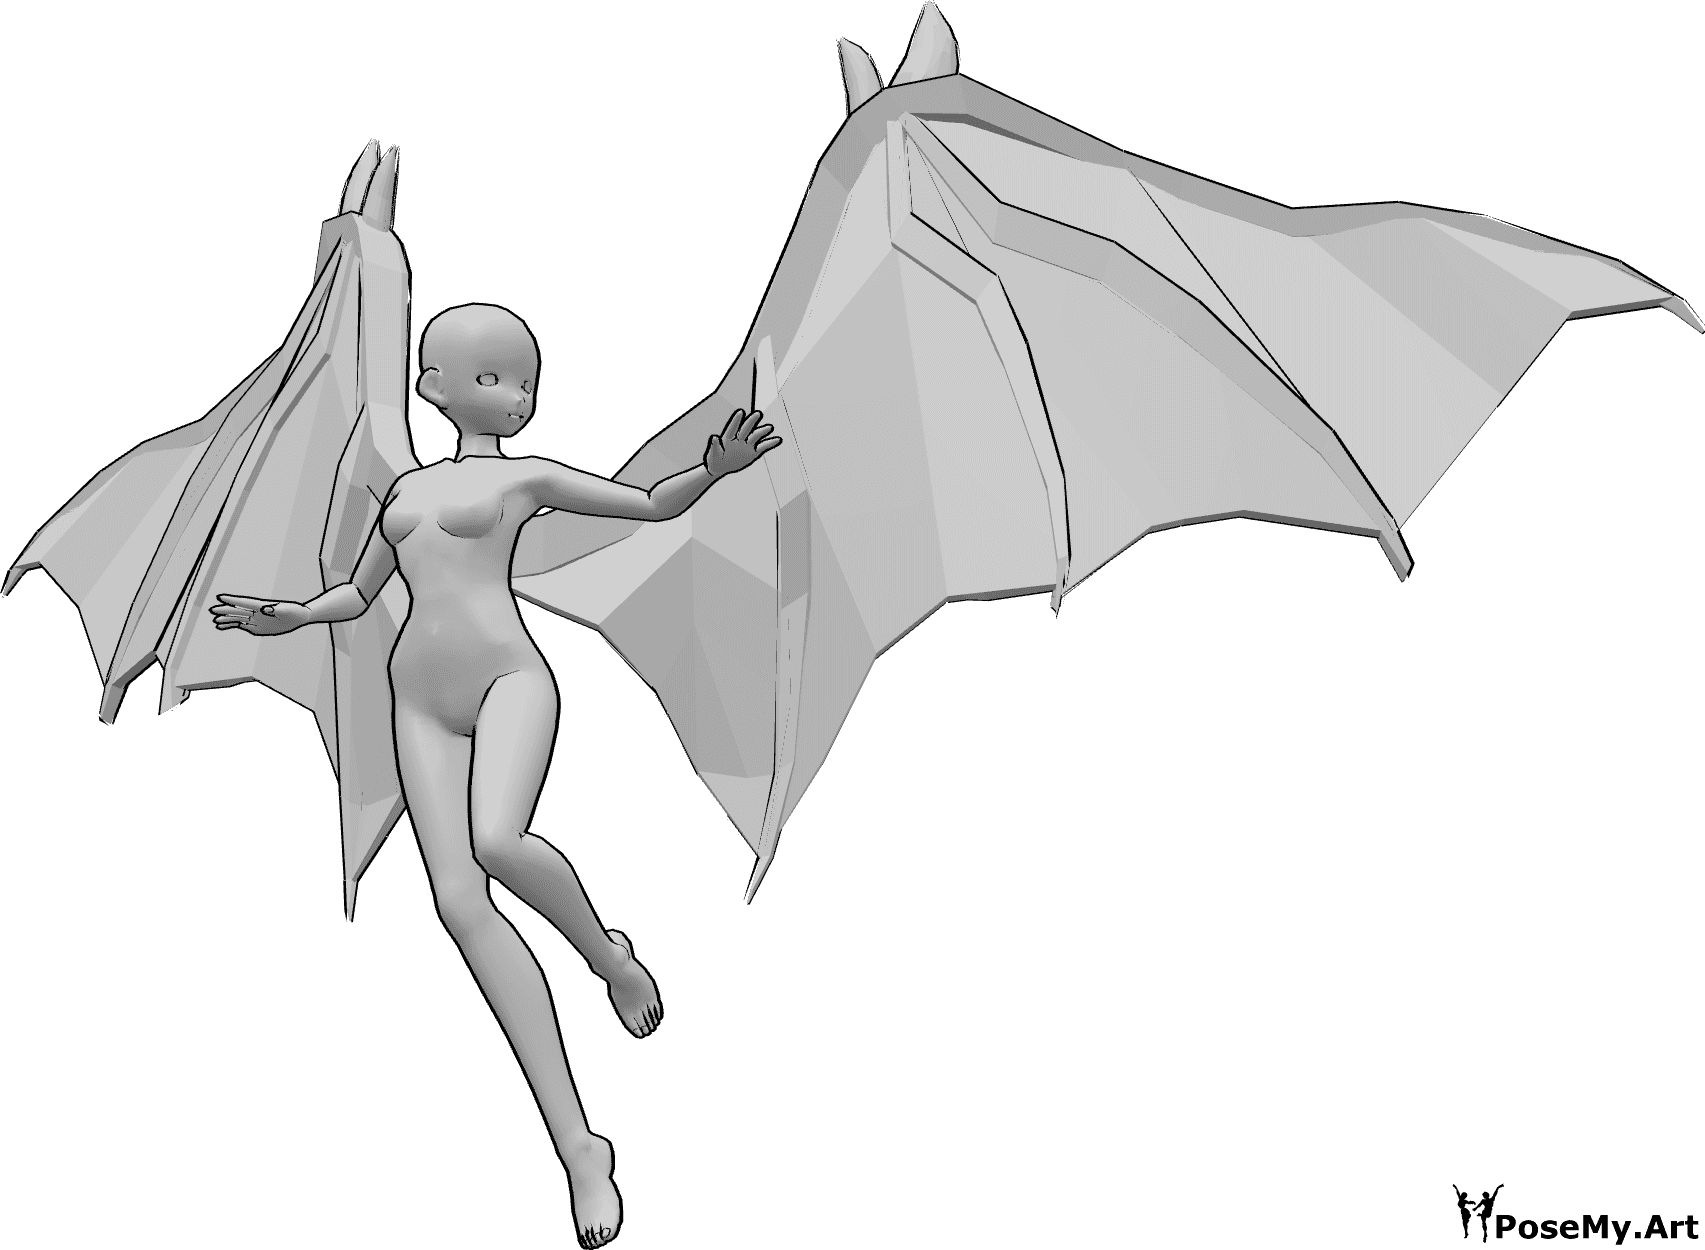 Référence des poses- Pose de vol à l'allure d'un film d'animation - Une femme animée avec des ailes de diable vole et regarde vers la gauche.